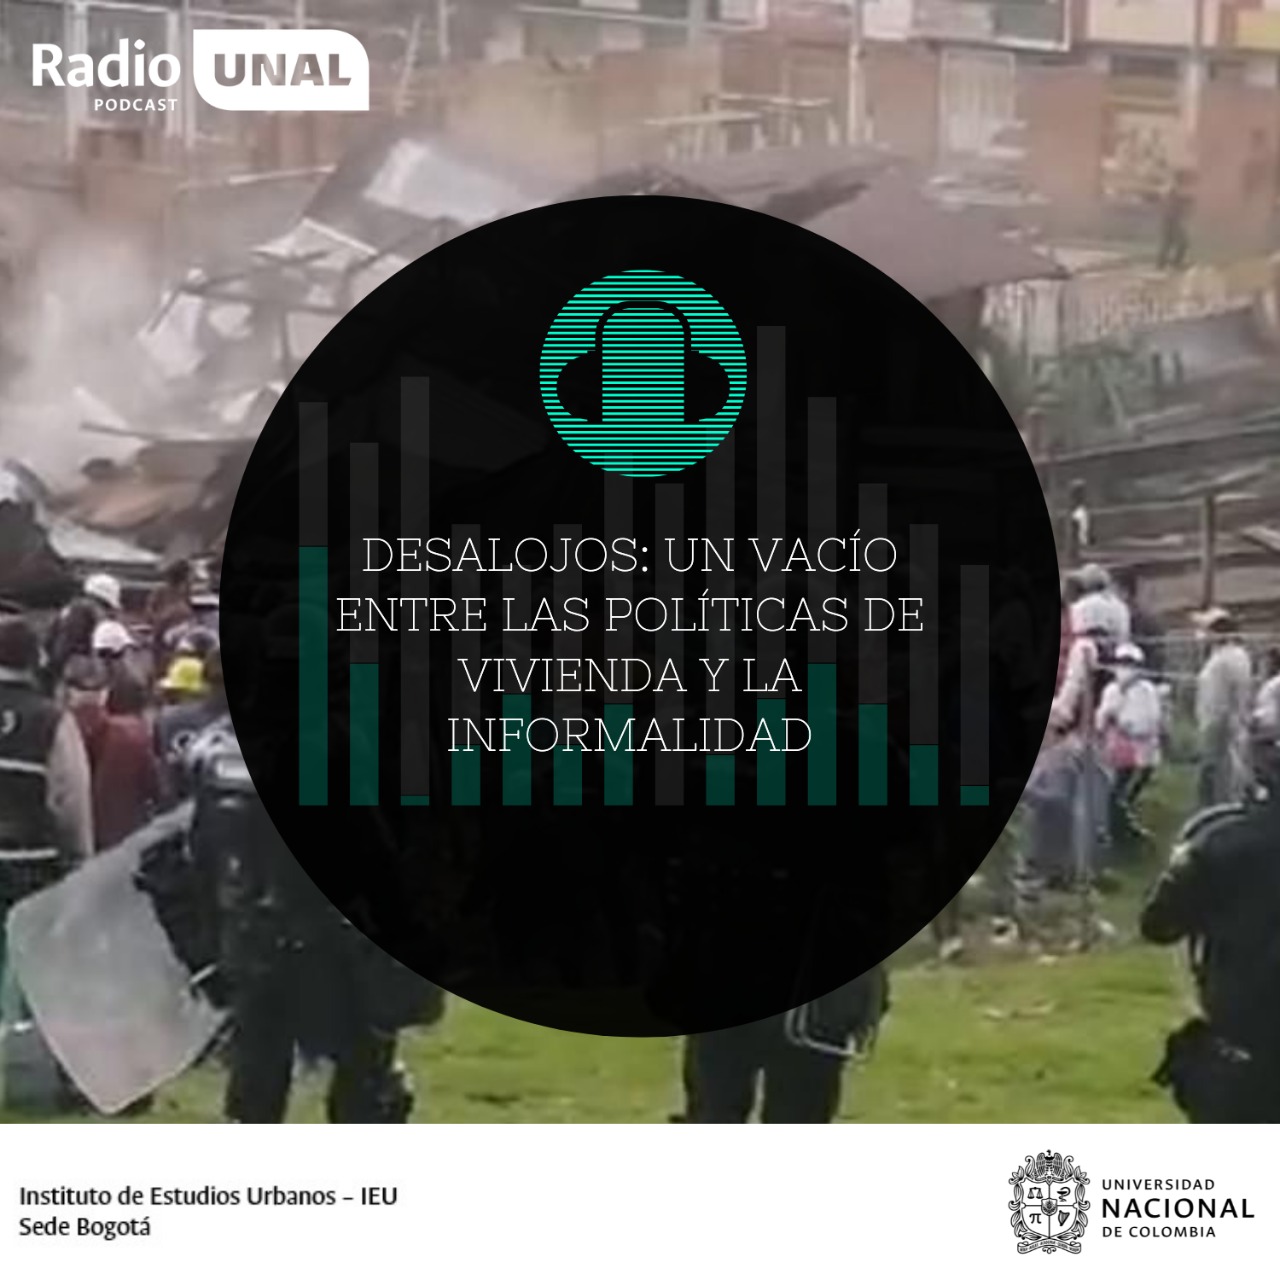 #PoscastRadioUNAL Desalojos: un vacío entre las políticas de vivienda y la informalidad